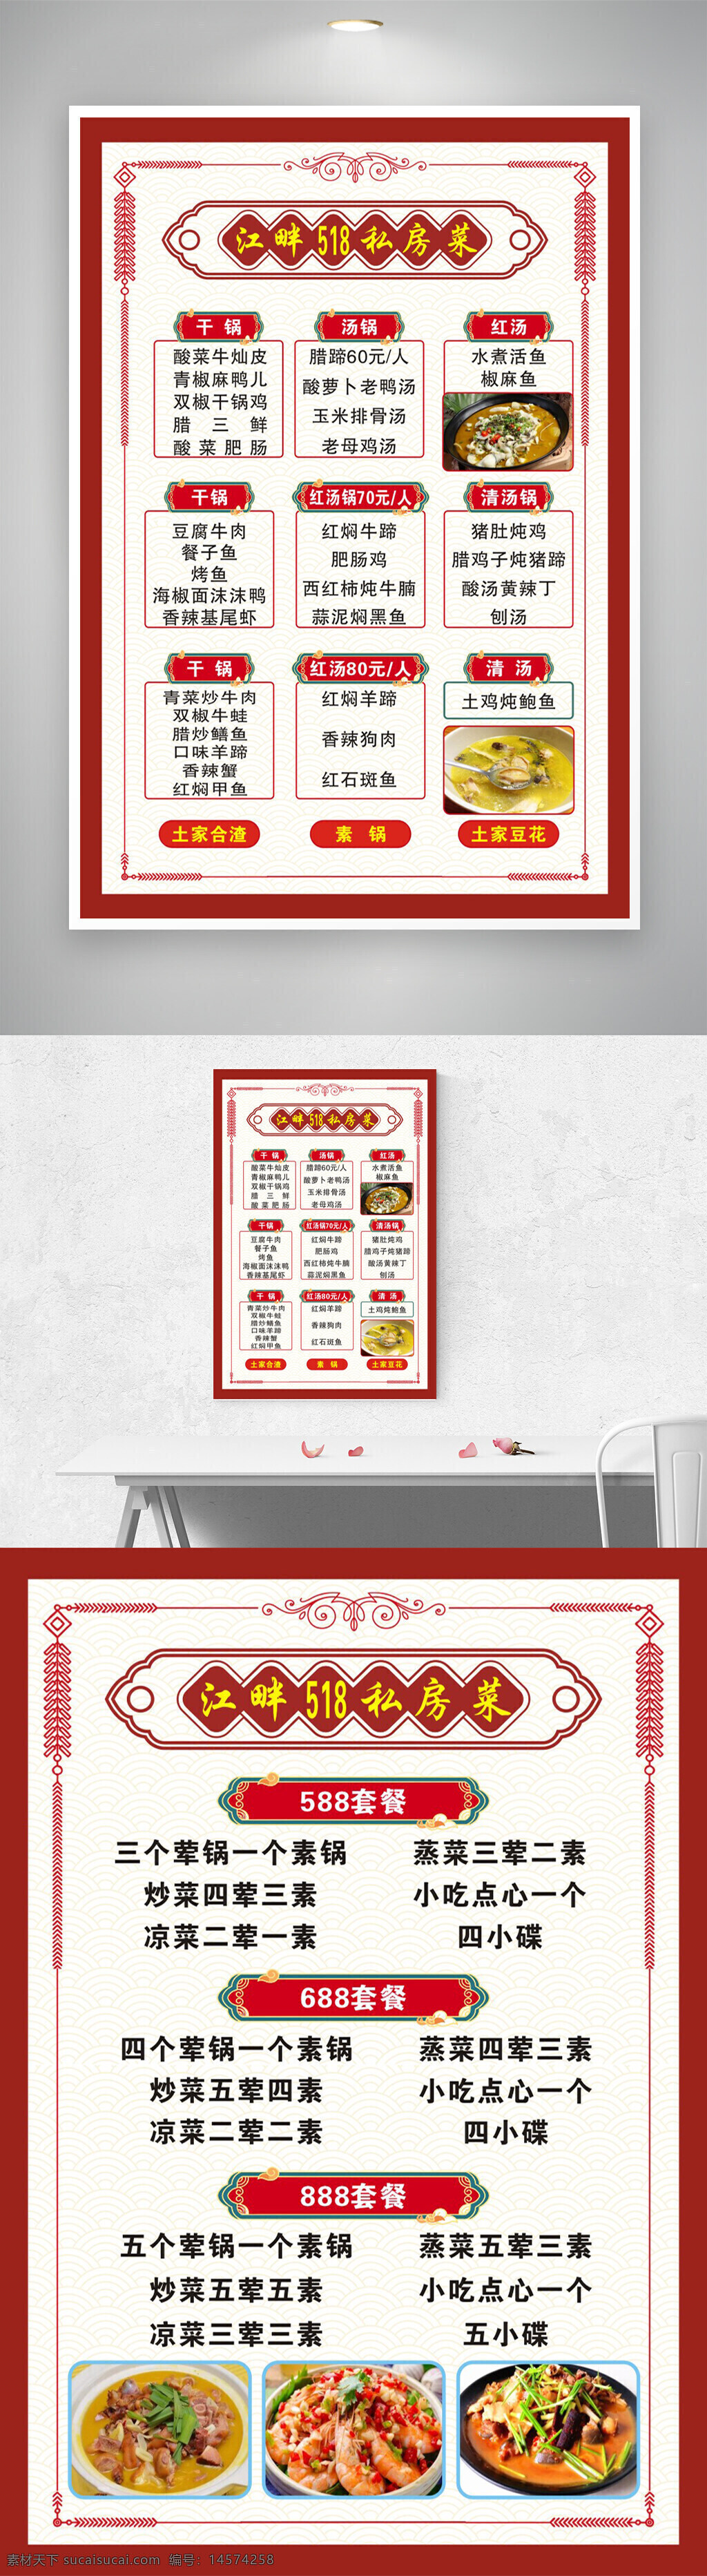 菜单 美食清单 餐馆价格表 餐桌菜单 小菜单 设计 广告设计 海报设计